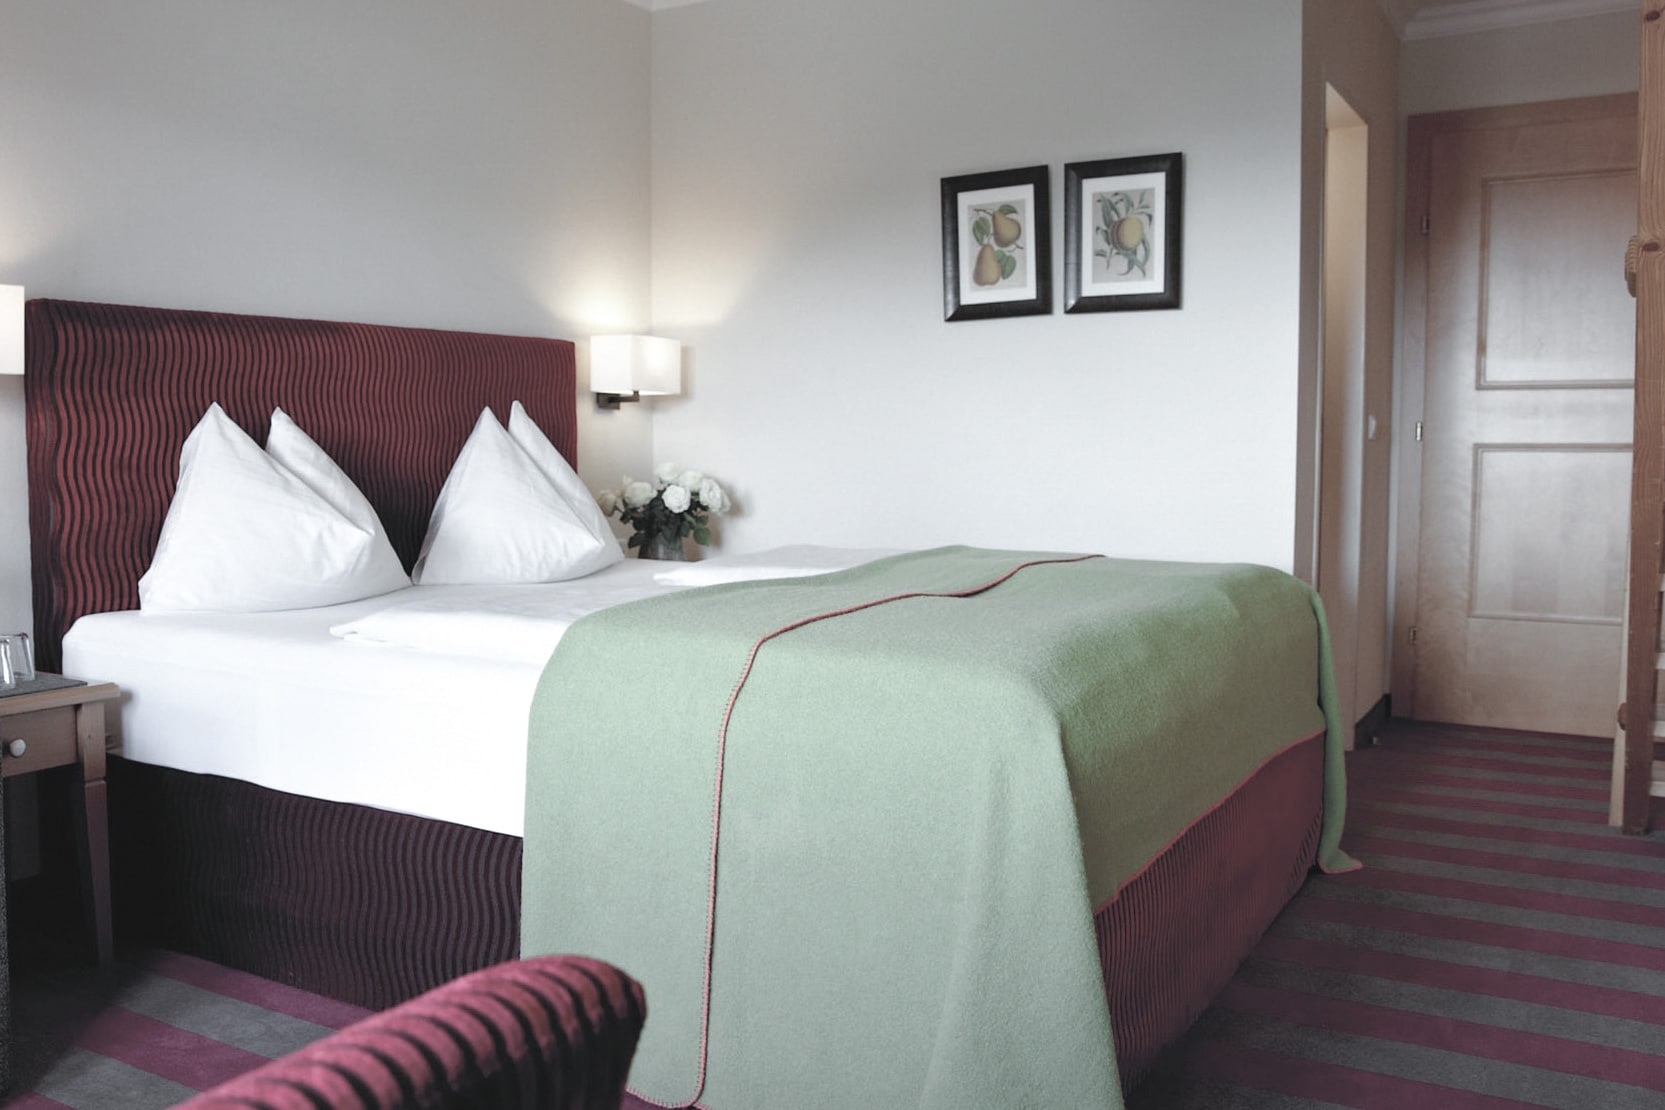 Ein ordentlich eingerichtetes Hotelzimmer mit einem großen Bett, das mit einer grünen Tagesdecke, frischer weißer Bettwäsche und weichen Kissen ausgestattet ist, ergänzt durch einen gestreiften Teppich und gerahmte Kunst an der Wand, die ein Gefühl von Komfort und Einfachheit vermitteln.